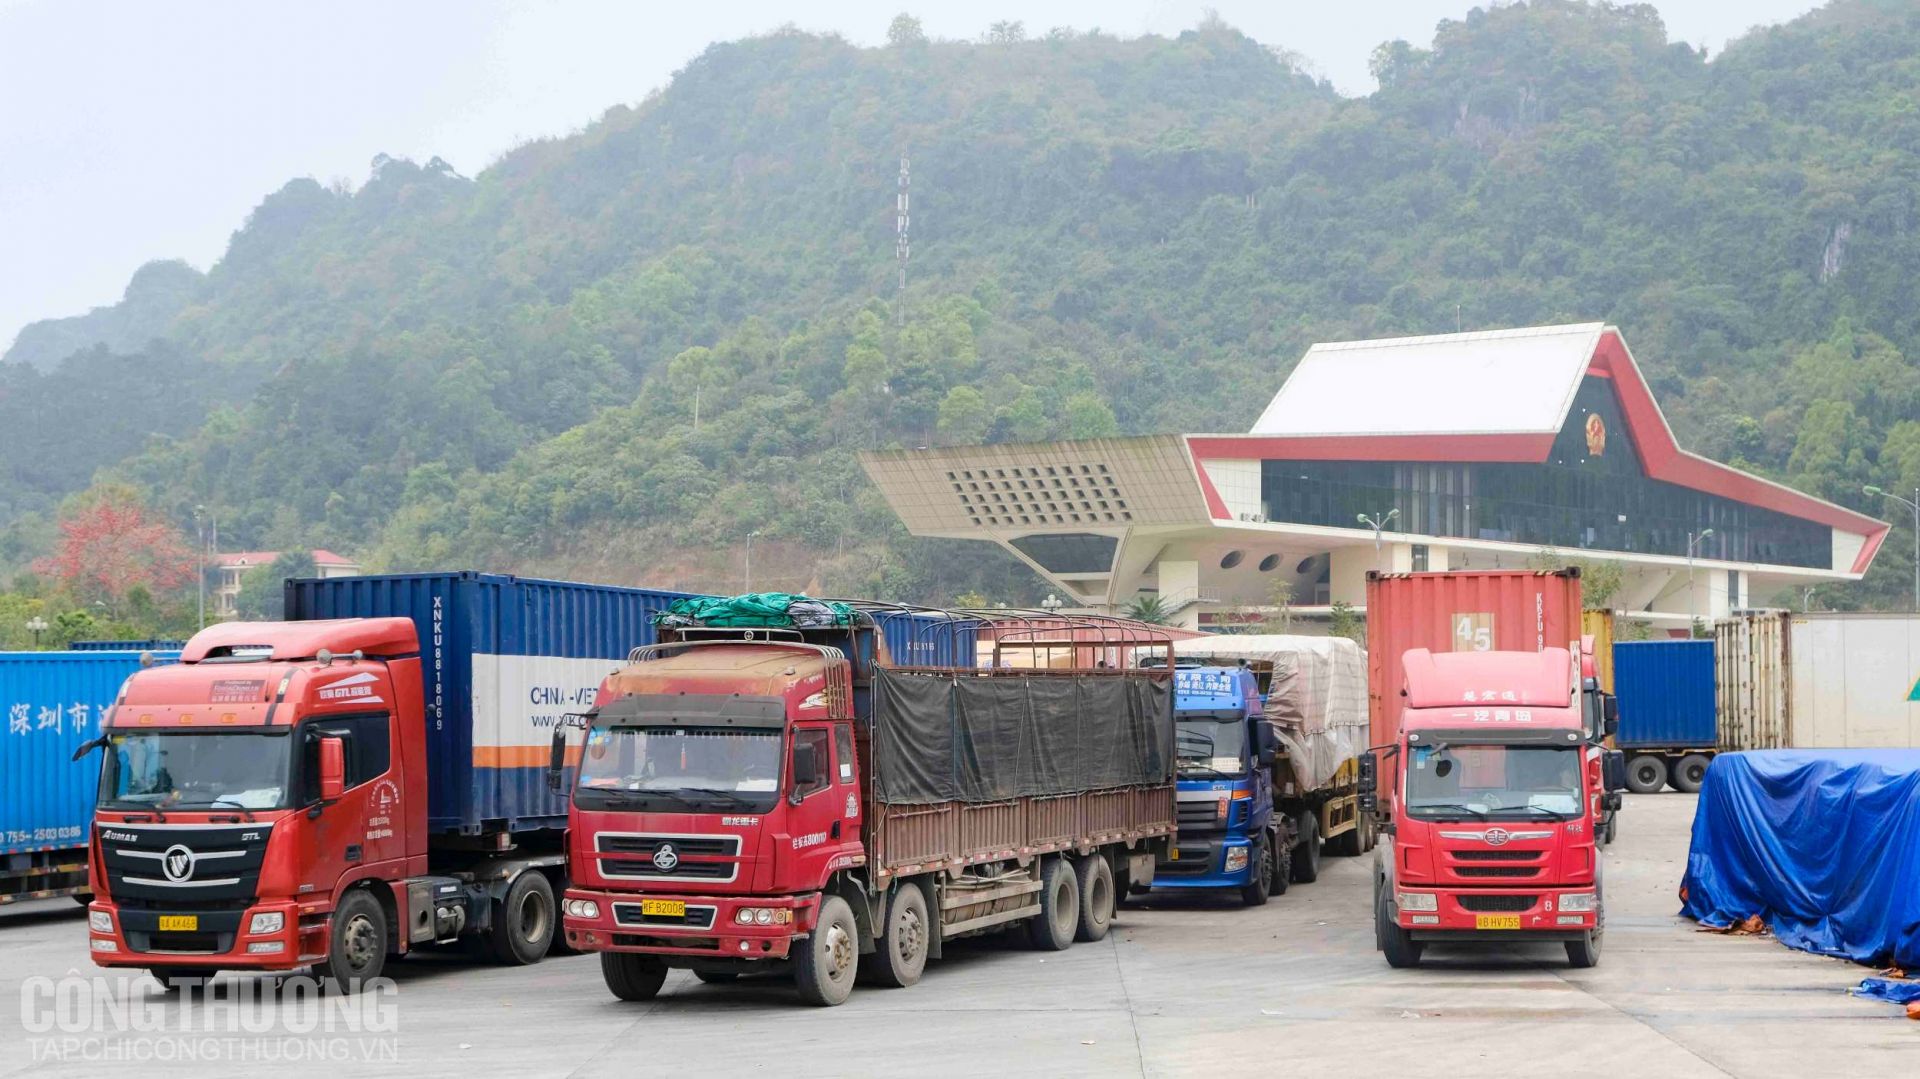 Xuất khẩu sang Trung Quốc: Nhanh chóng chuyển đổi từ tiểu ngạch sang chính ngạch